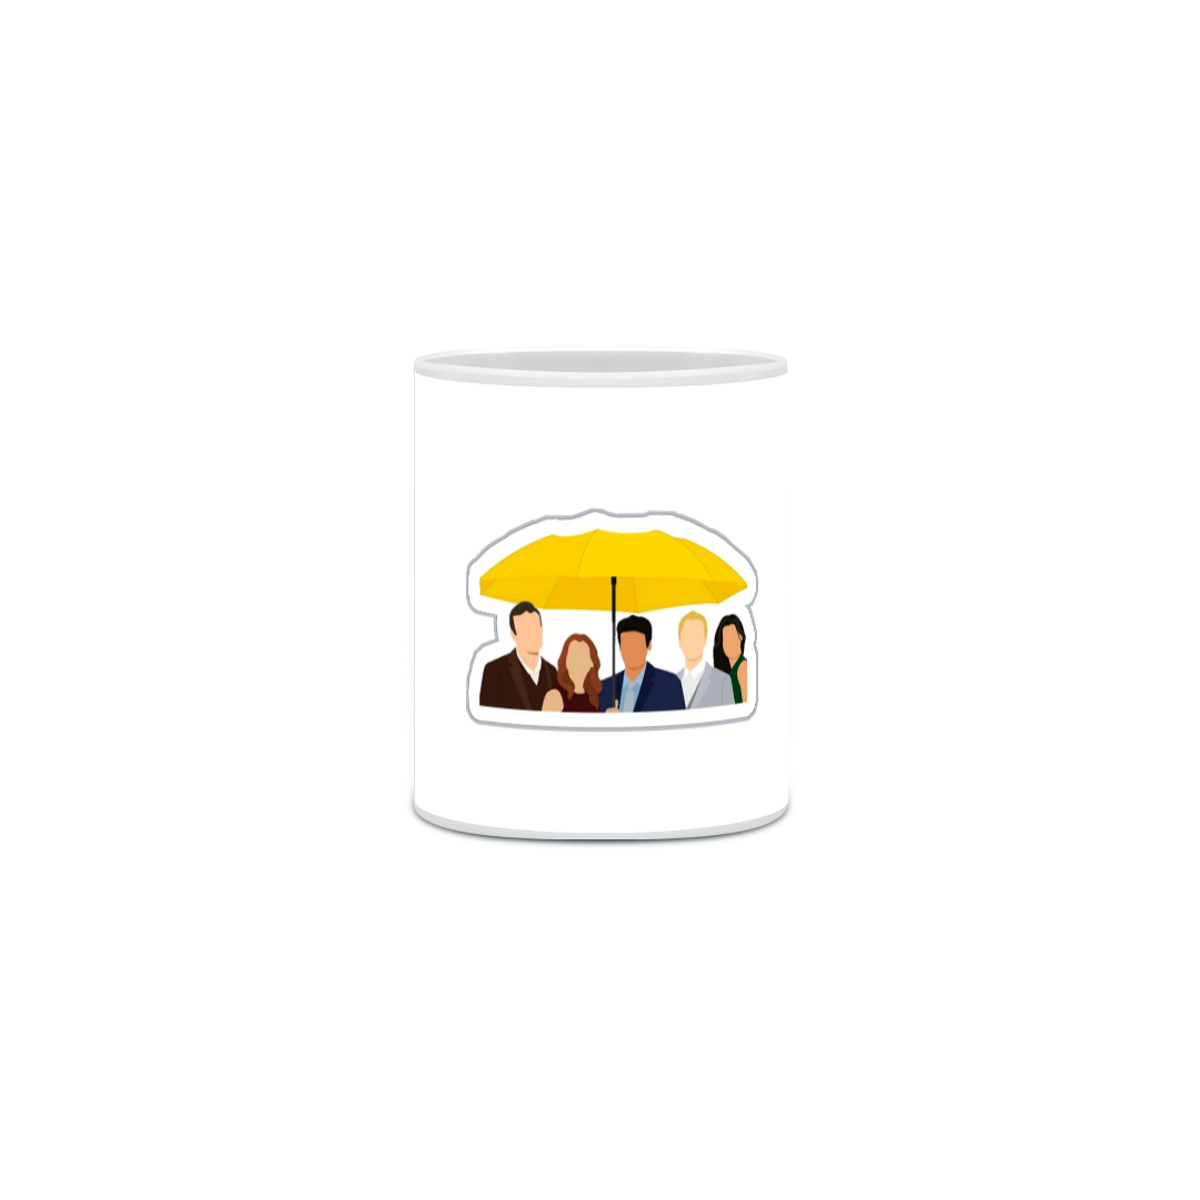 Nome do produto: Yellow Umbrella